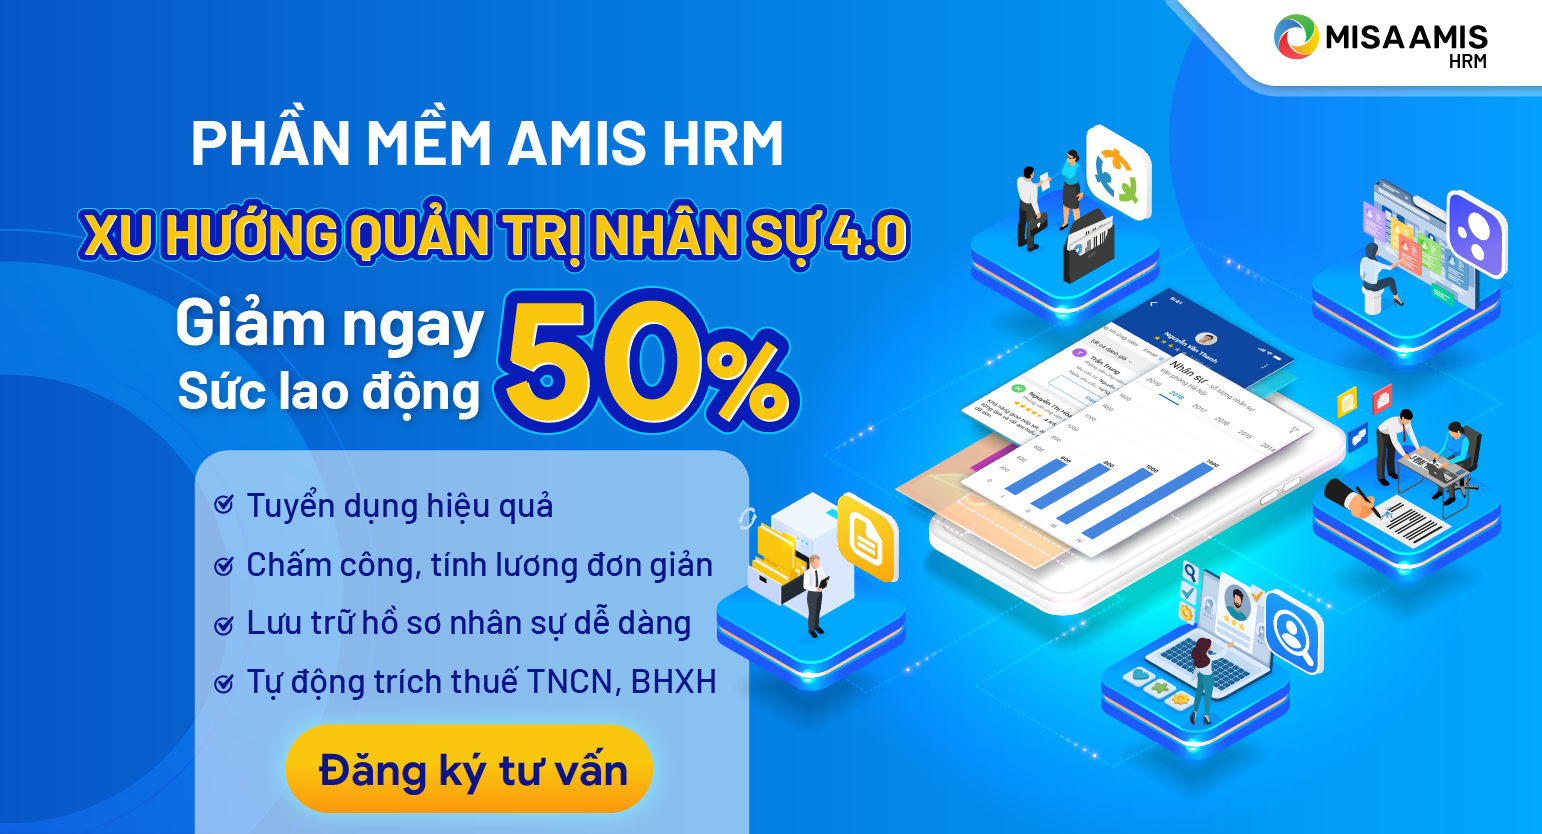 Đăng ký ngay phần mềm AMIS HRM